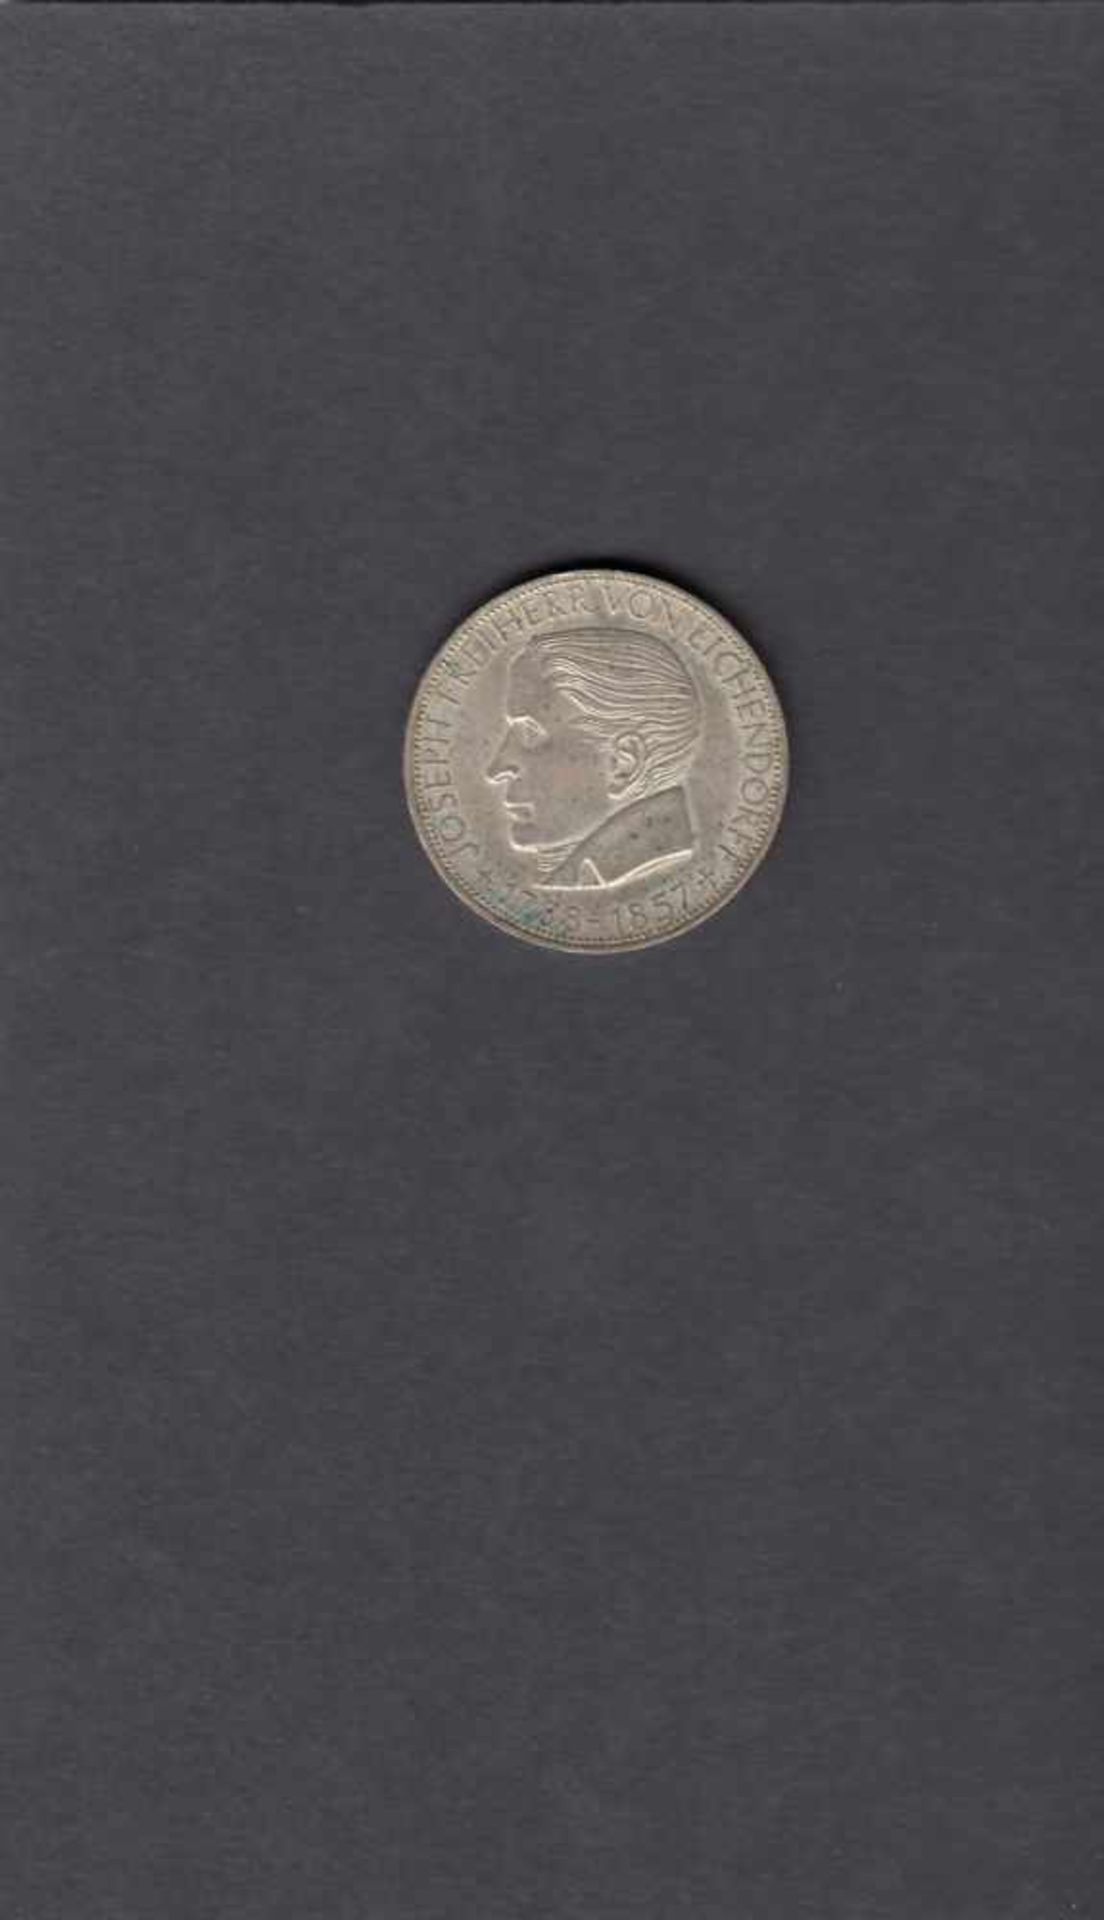 5 Mark Silber, 1957, Eichendorff